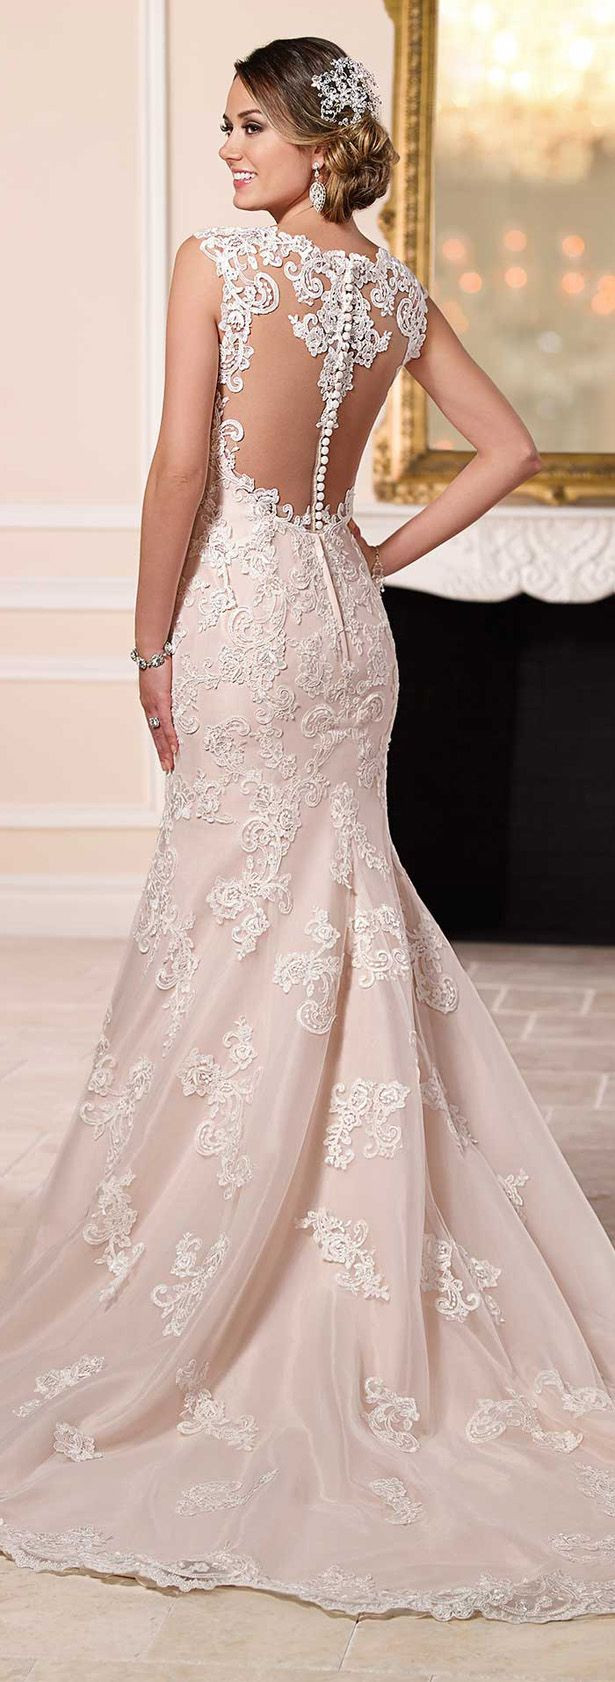 Blush Colored Wedding Dress
 Die 25 besten Ideen zu Bella wedding dress auf Pinterest